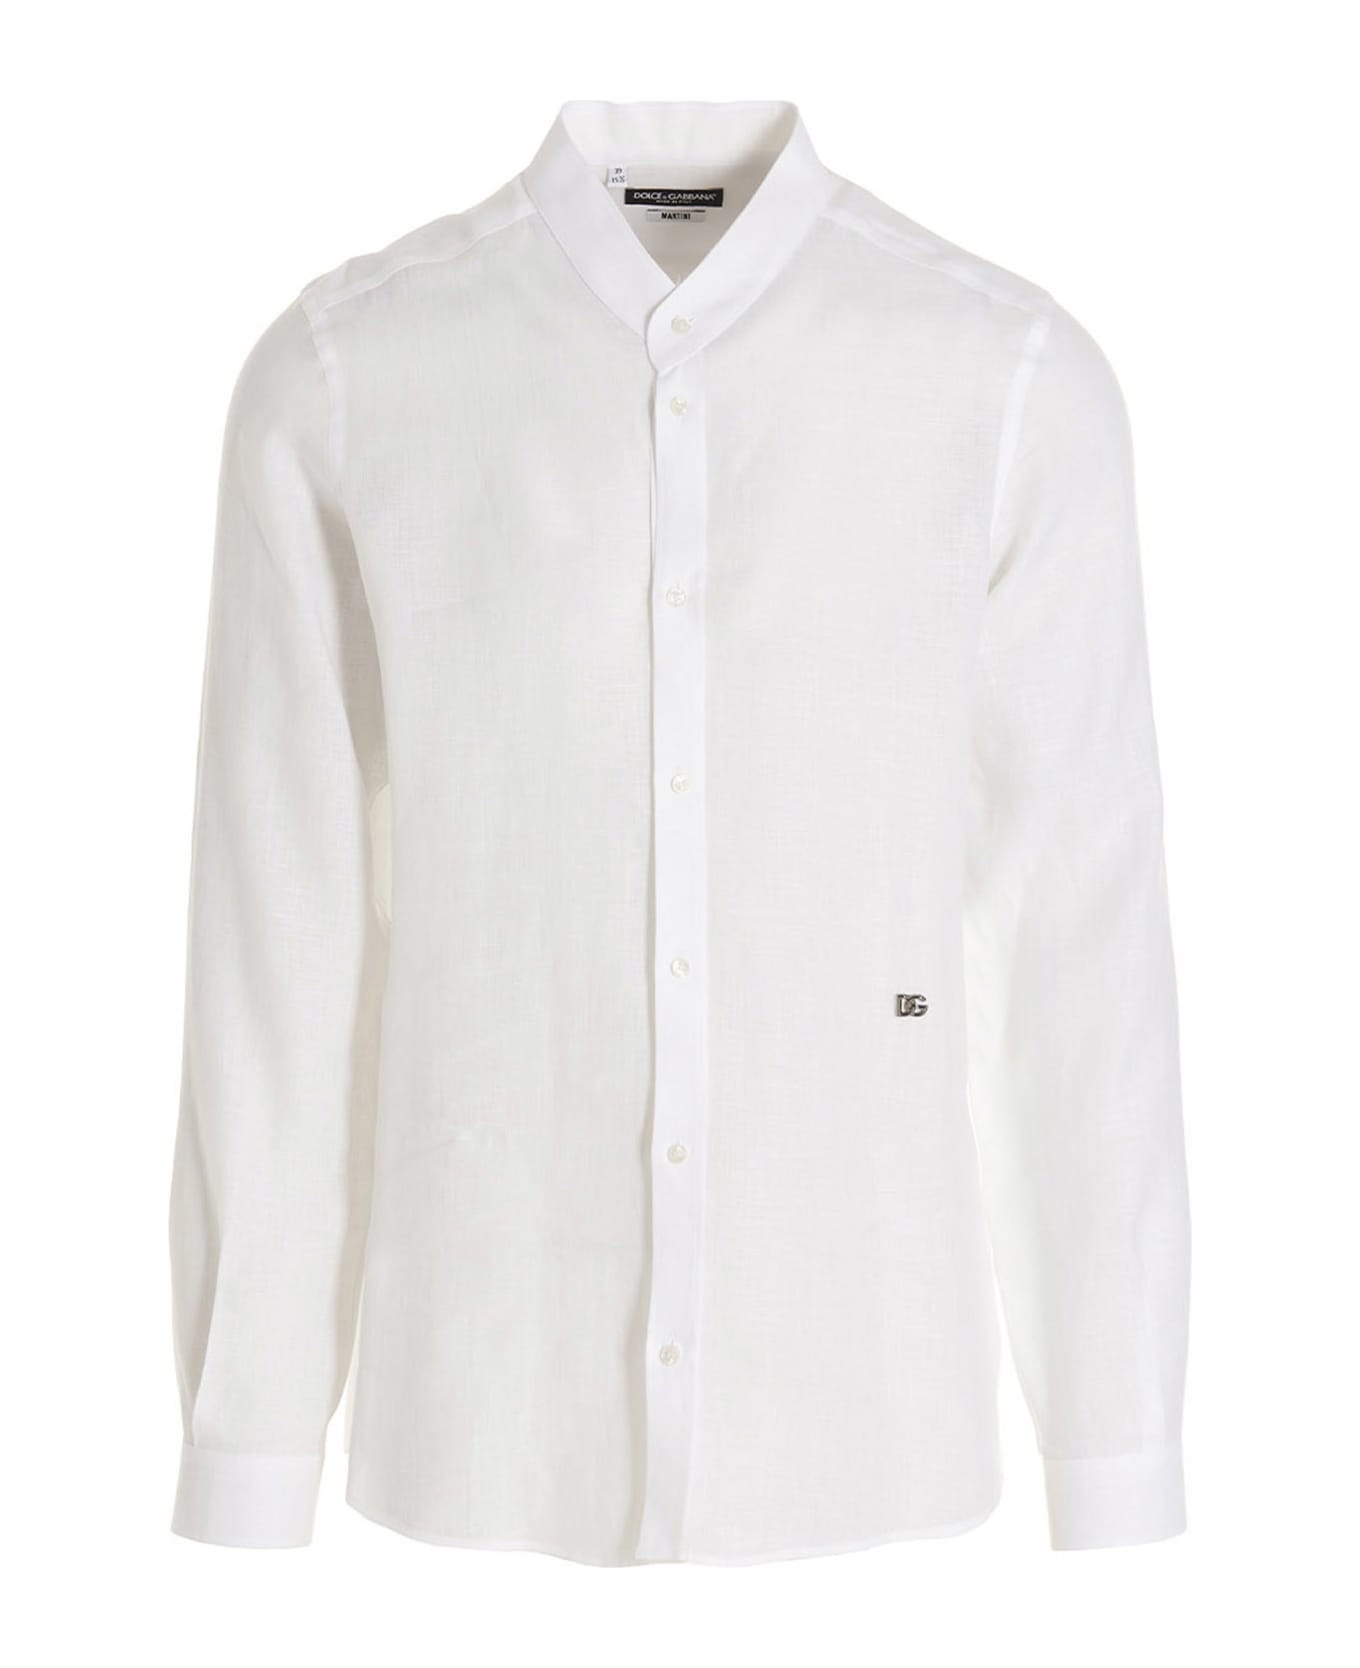 Dolce & Gabbana X Martini Shirt - White